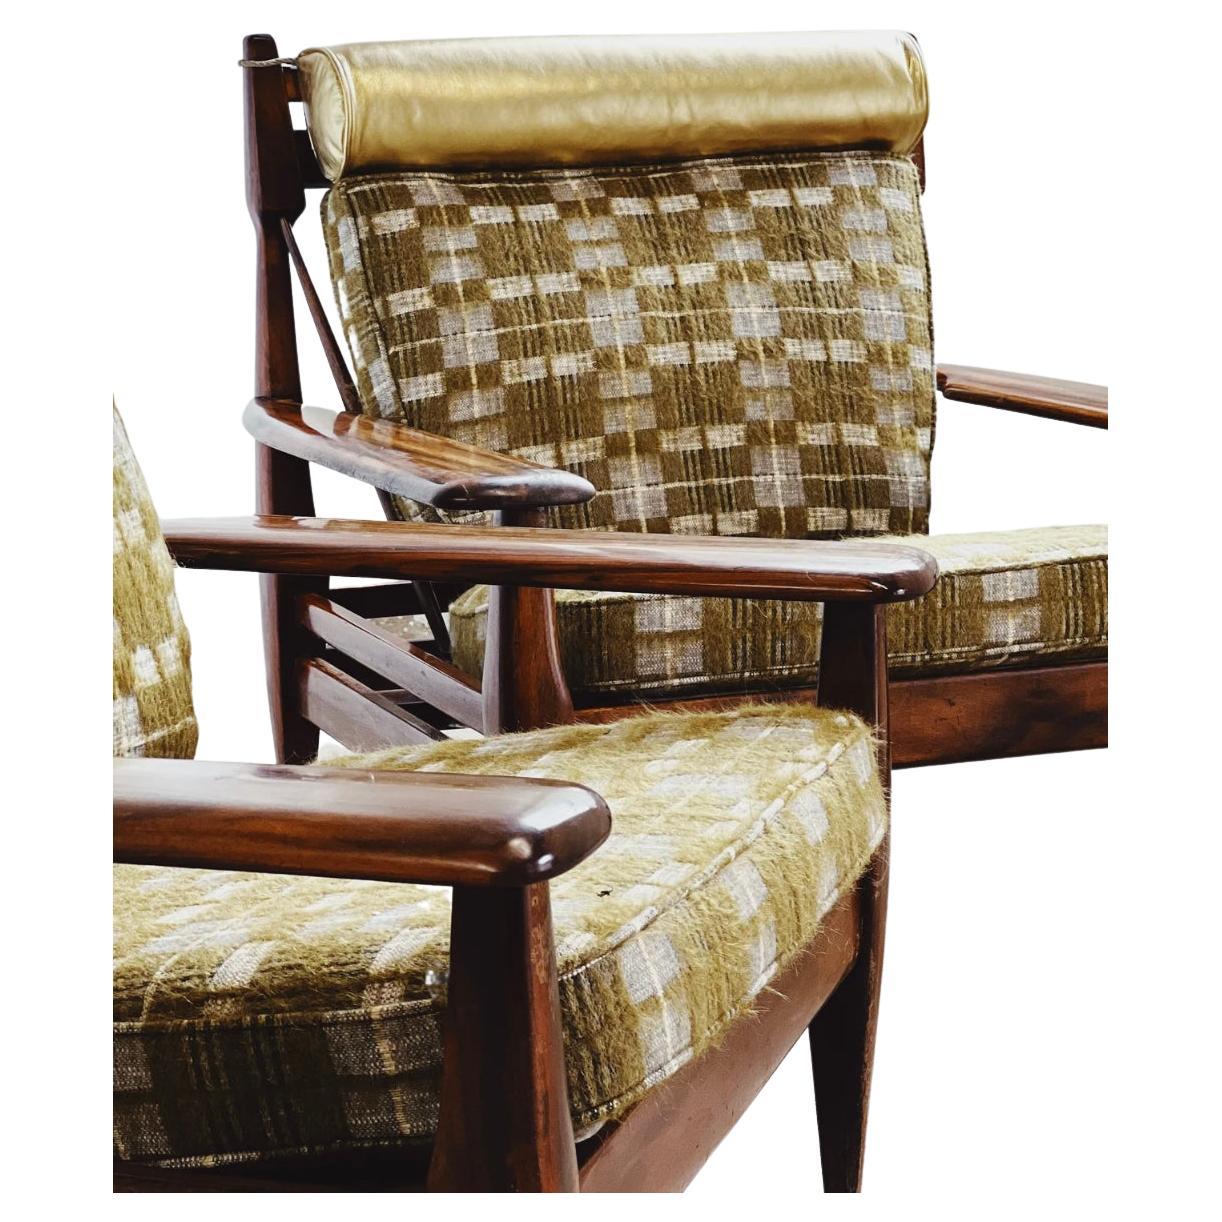 Rare paire de chaises longues en palissandre des années 1960 par Jean Gillon. Recouvert d'une laine à carreaux Pierre Frey, avec des couleurs vertes, bleues et grises. Appui-tête en cuir italien métallisé doré. Tissu en état neuf, quelques éraflures